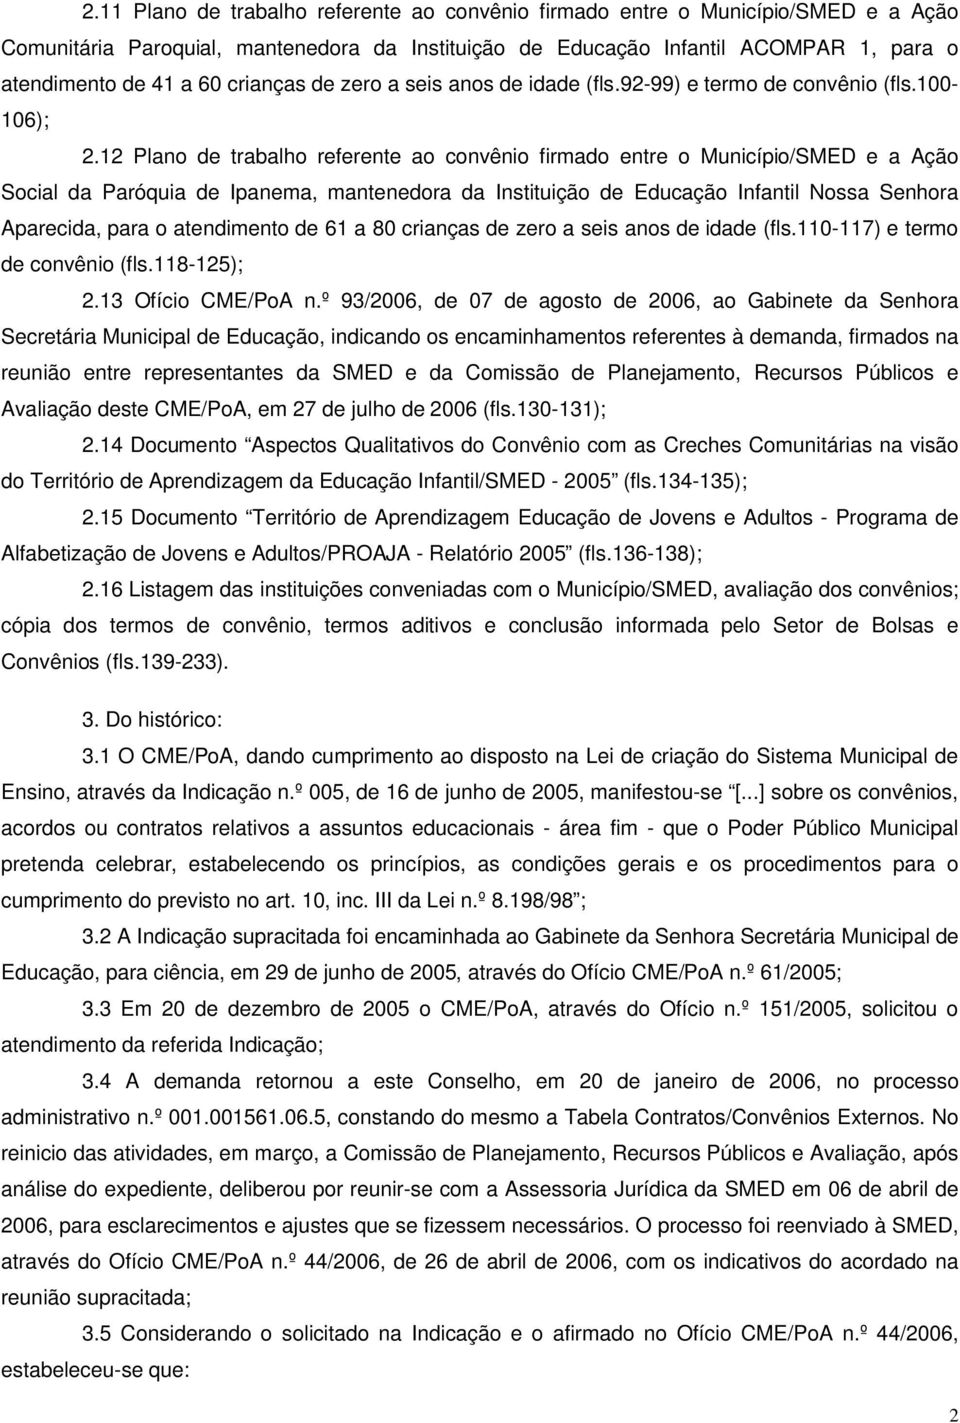 12 Plano de trabalho referente ao convênio firmado entre o Município/SMED e a Ação Social da Paróquia de Ipanema, mantenedora da Instituição de Educação Infantil Nossa Senhora Aparecida, para o